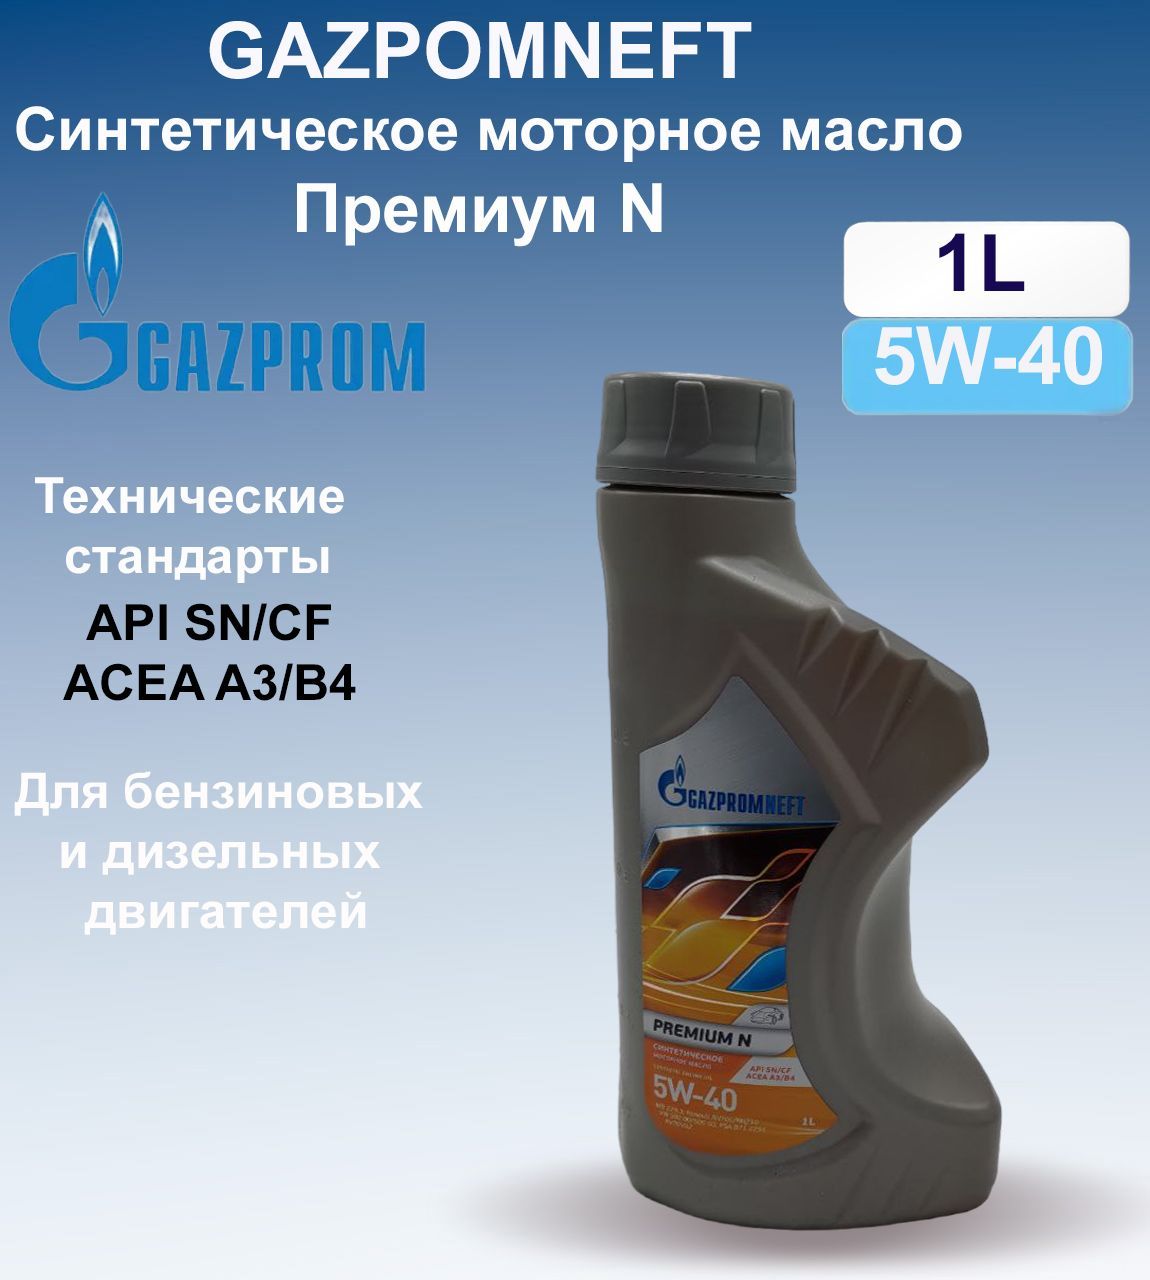 Gazpromneft Premium n 5w-40 5л. Масло моторное Gazpromneft Premium n 5w40 синтетика. Автомасло от Газпрома 5-40 синтетика.